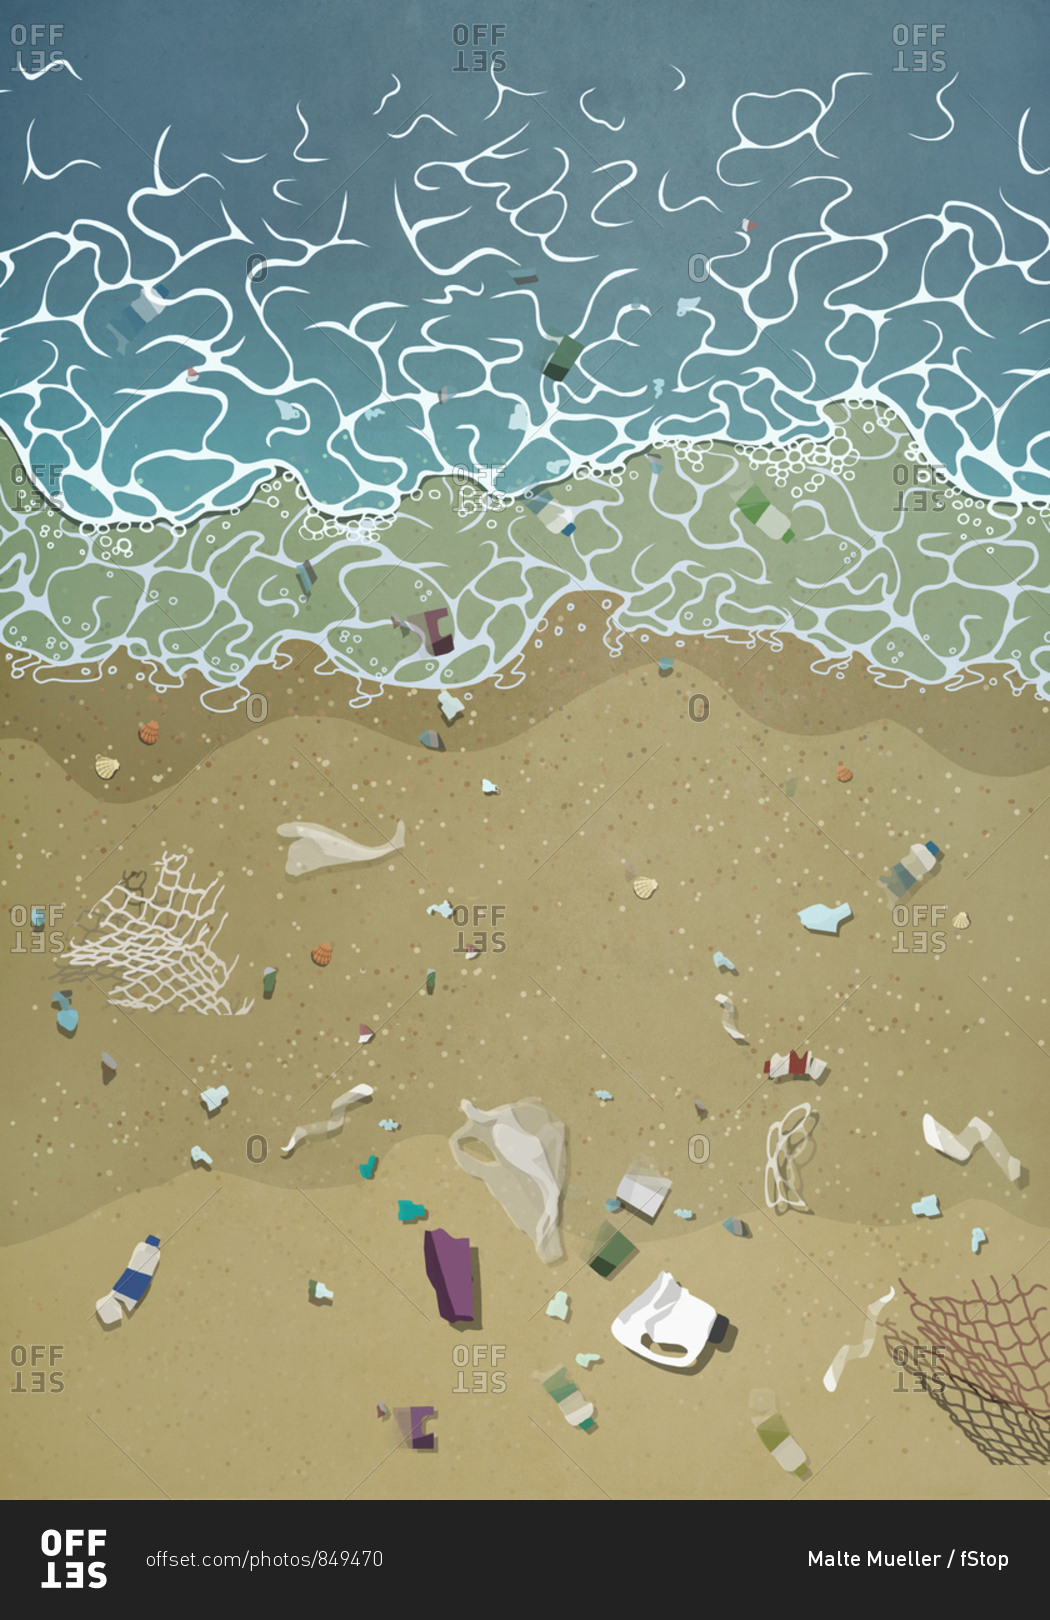 Litter washing up on ocean beach